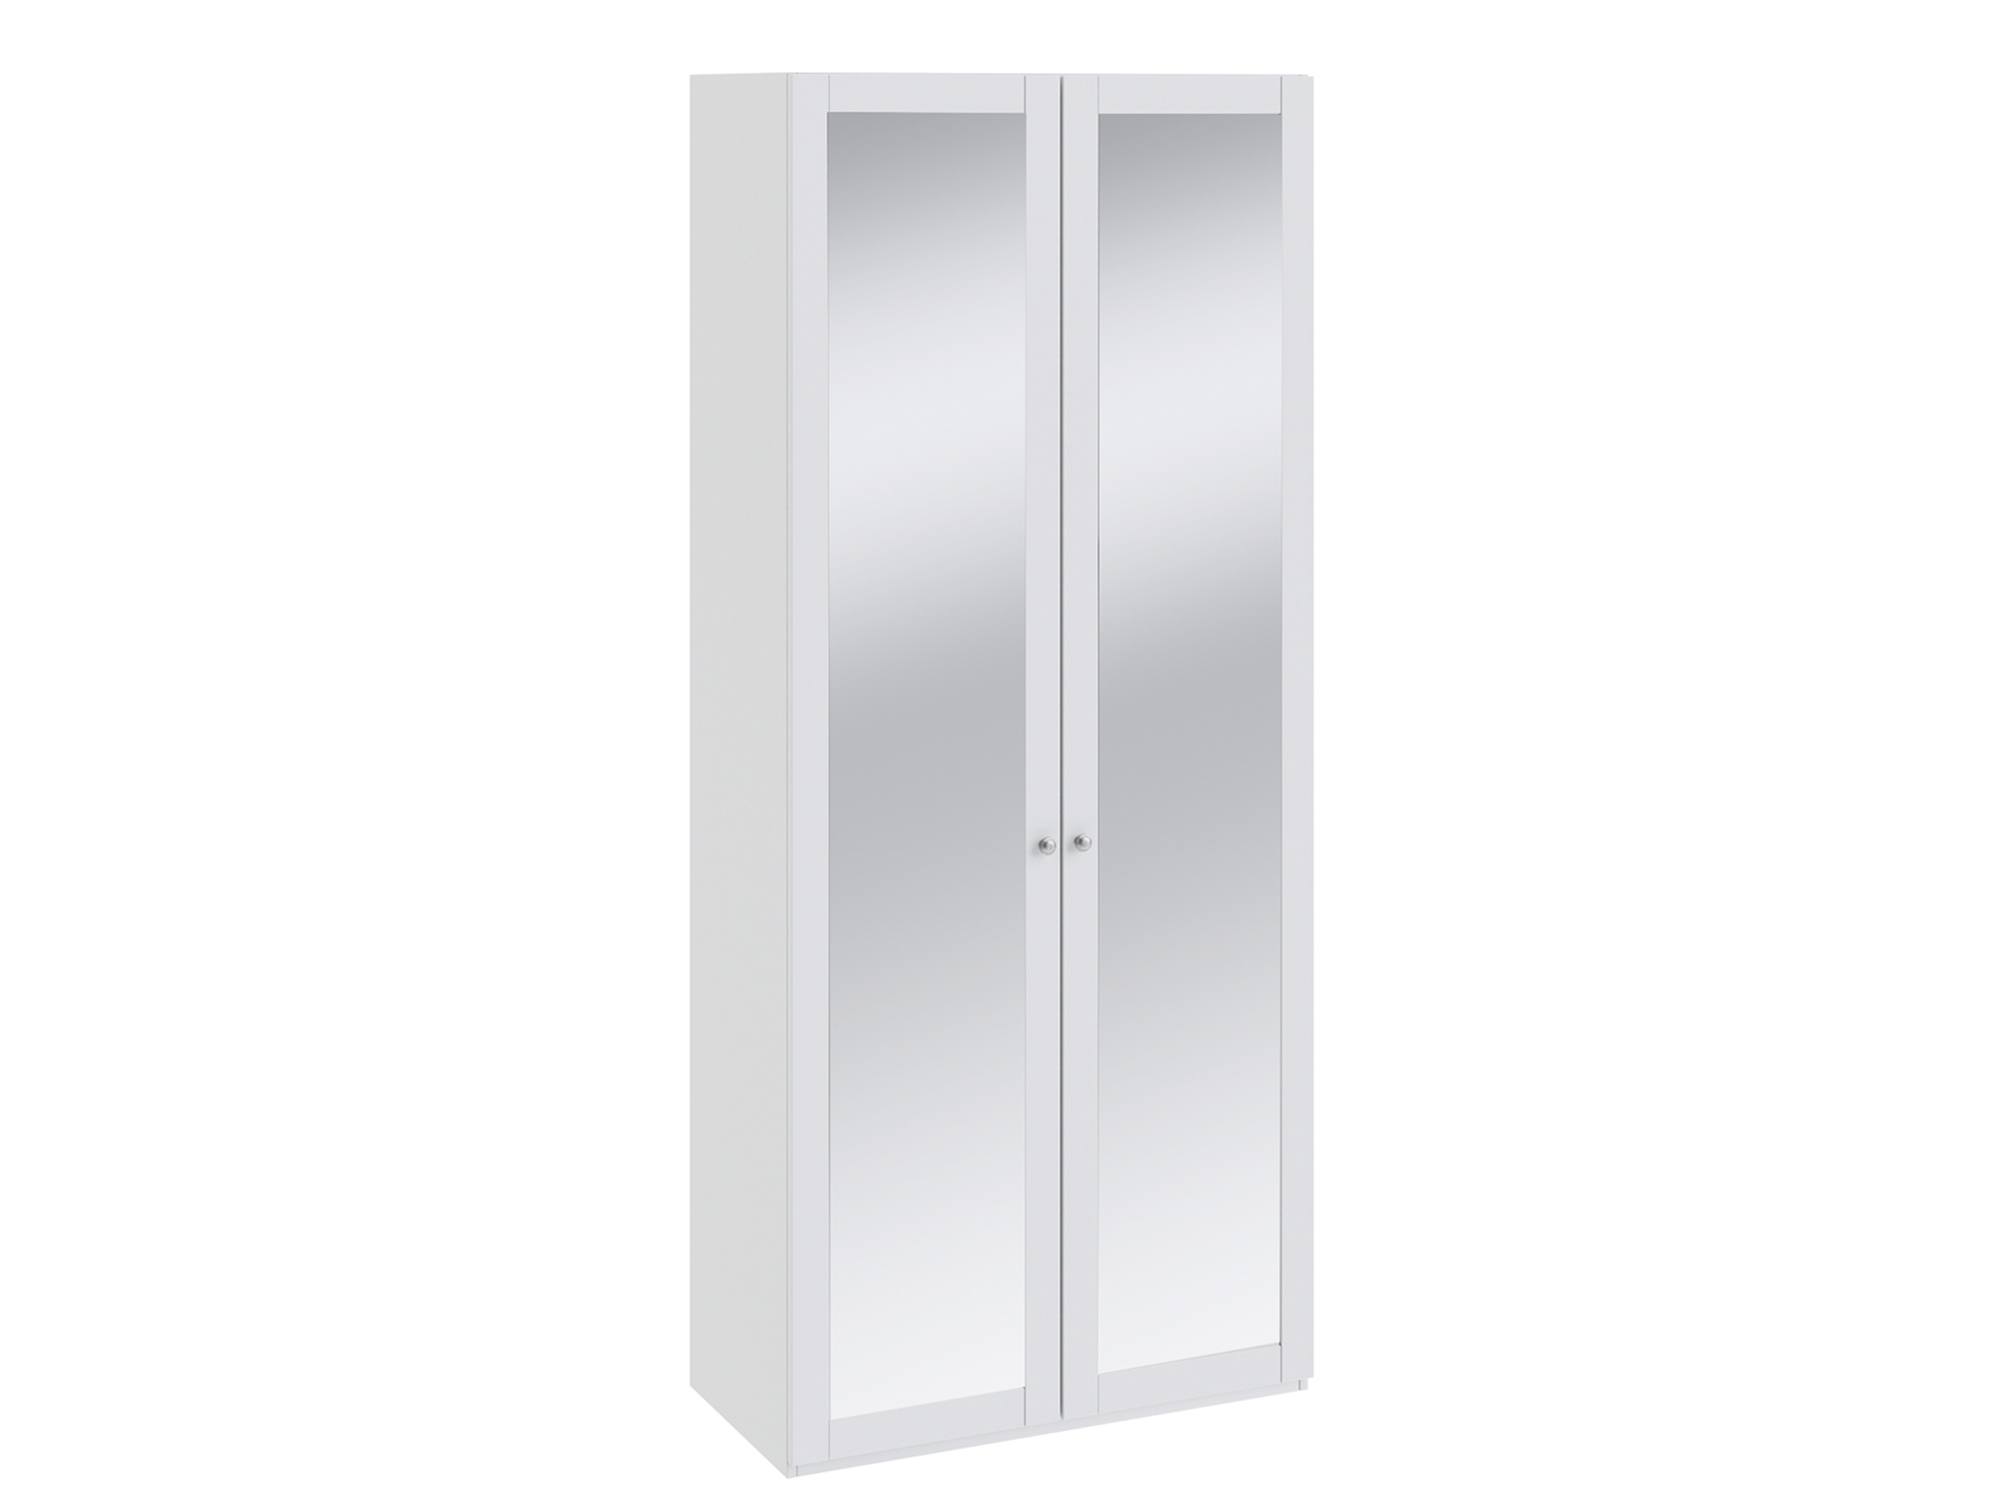 Шкаф для одежды с 2-мя зеркальными дверями Ривьера Белый, МДФ, Зеркало, ЛДСП, Кромка ABS шкаф для одежды с 2 мя зеркальными дверями лючия штрихлак белый мдф зеркало лдсп